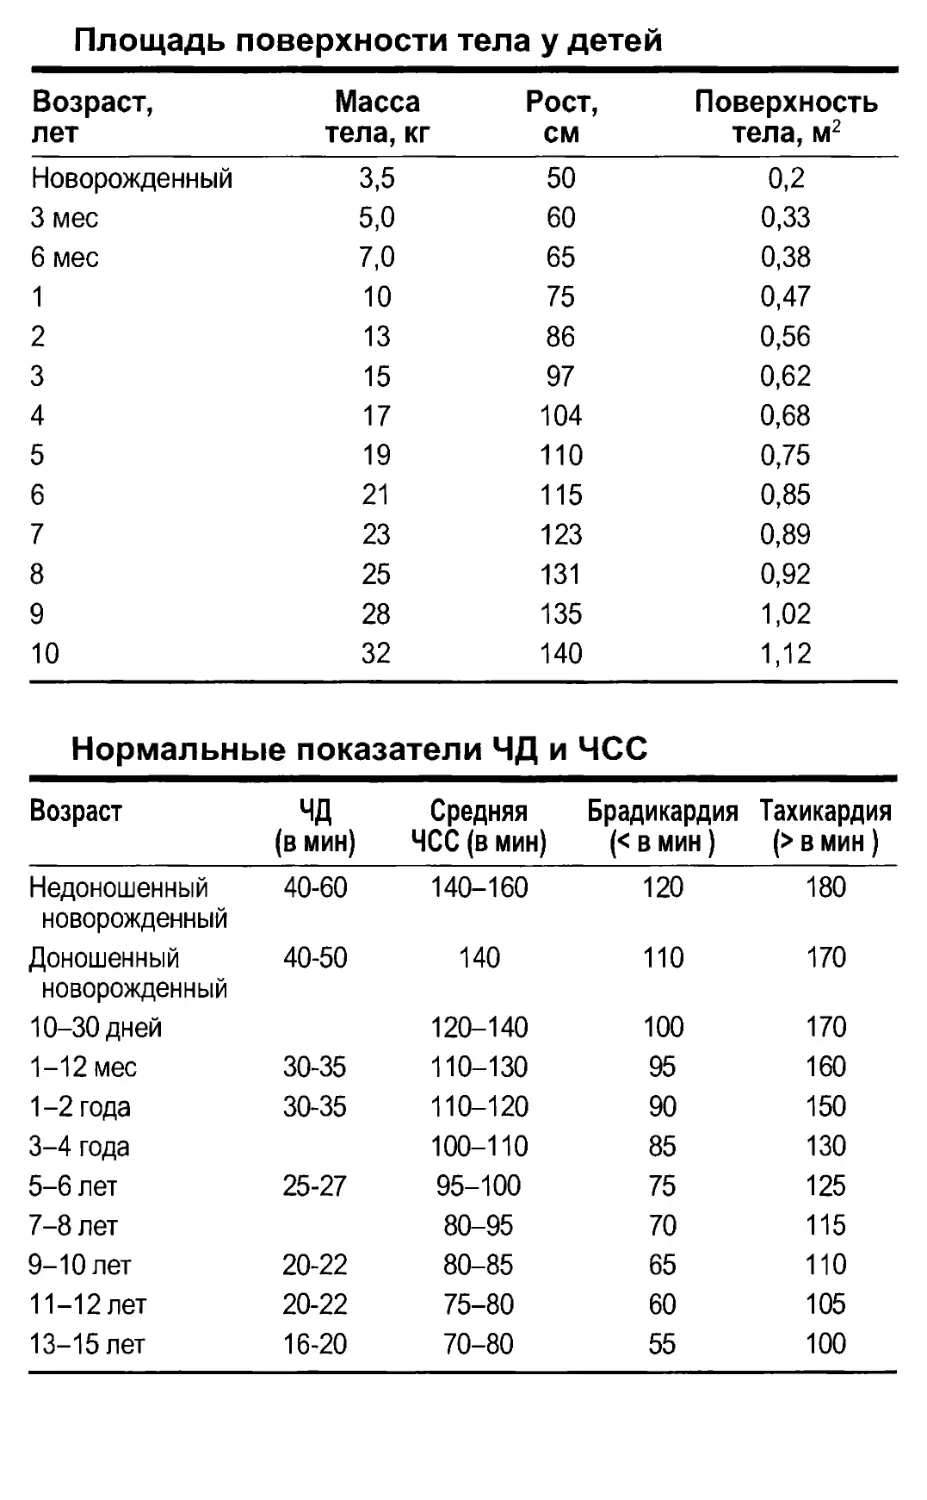 Справочные таблицы
Нормальные показатели ЧД и ЧСС